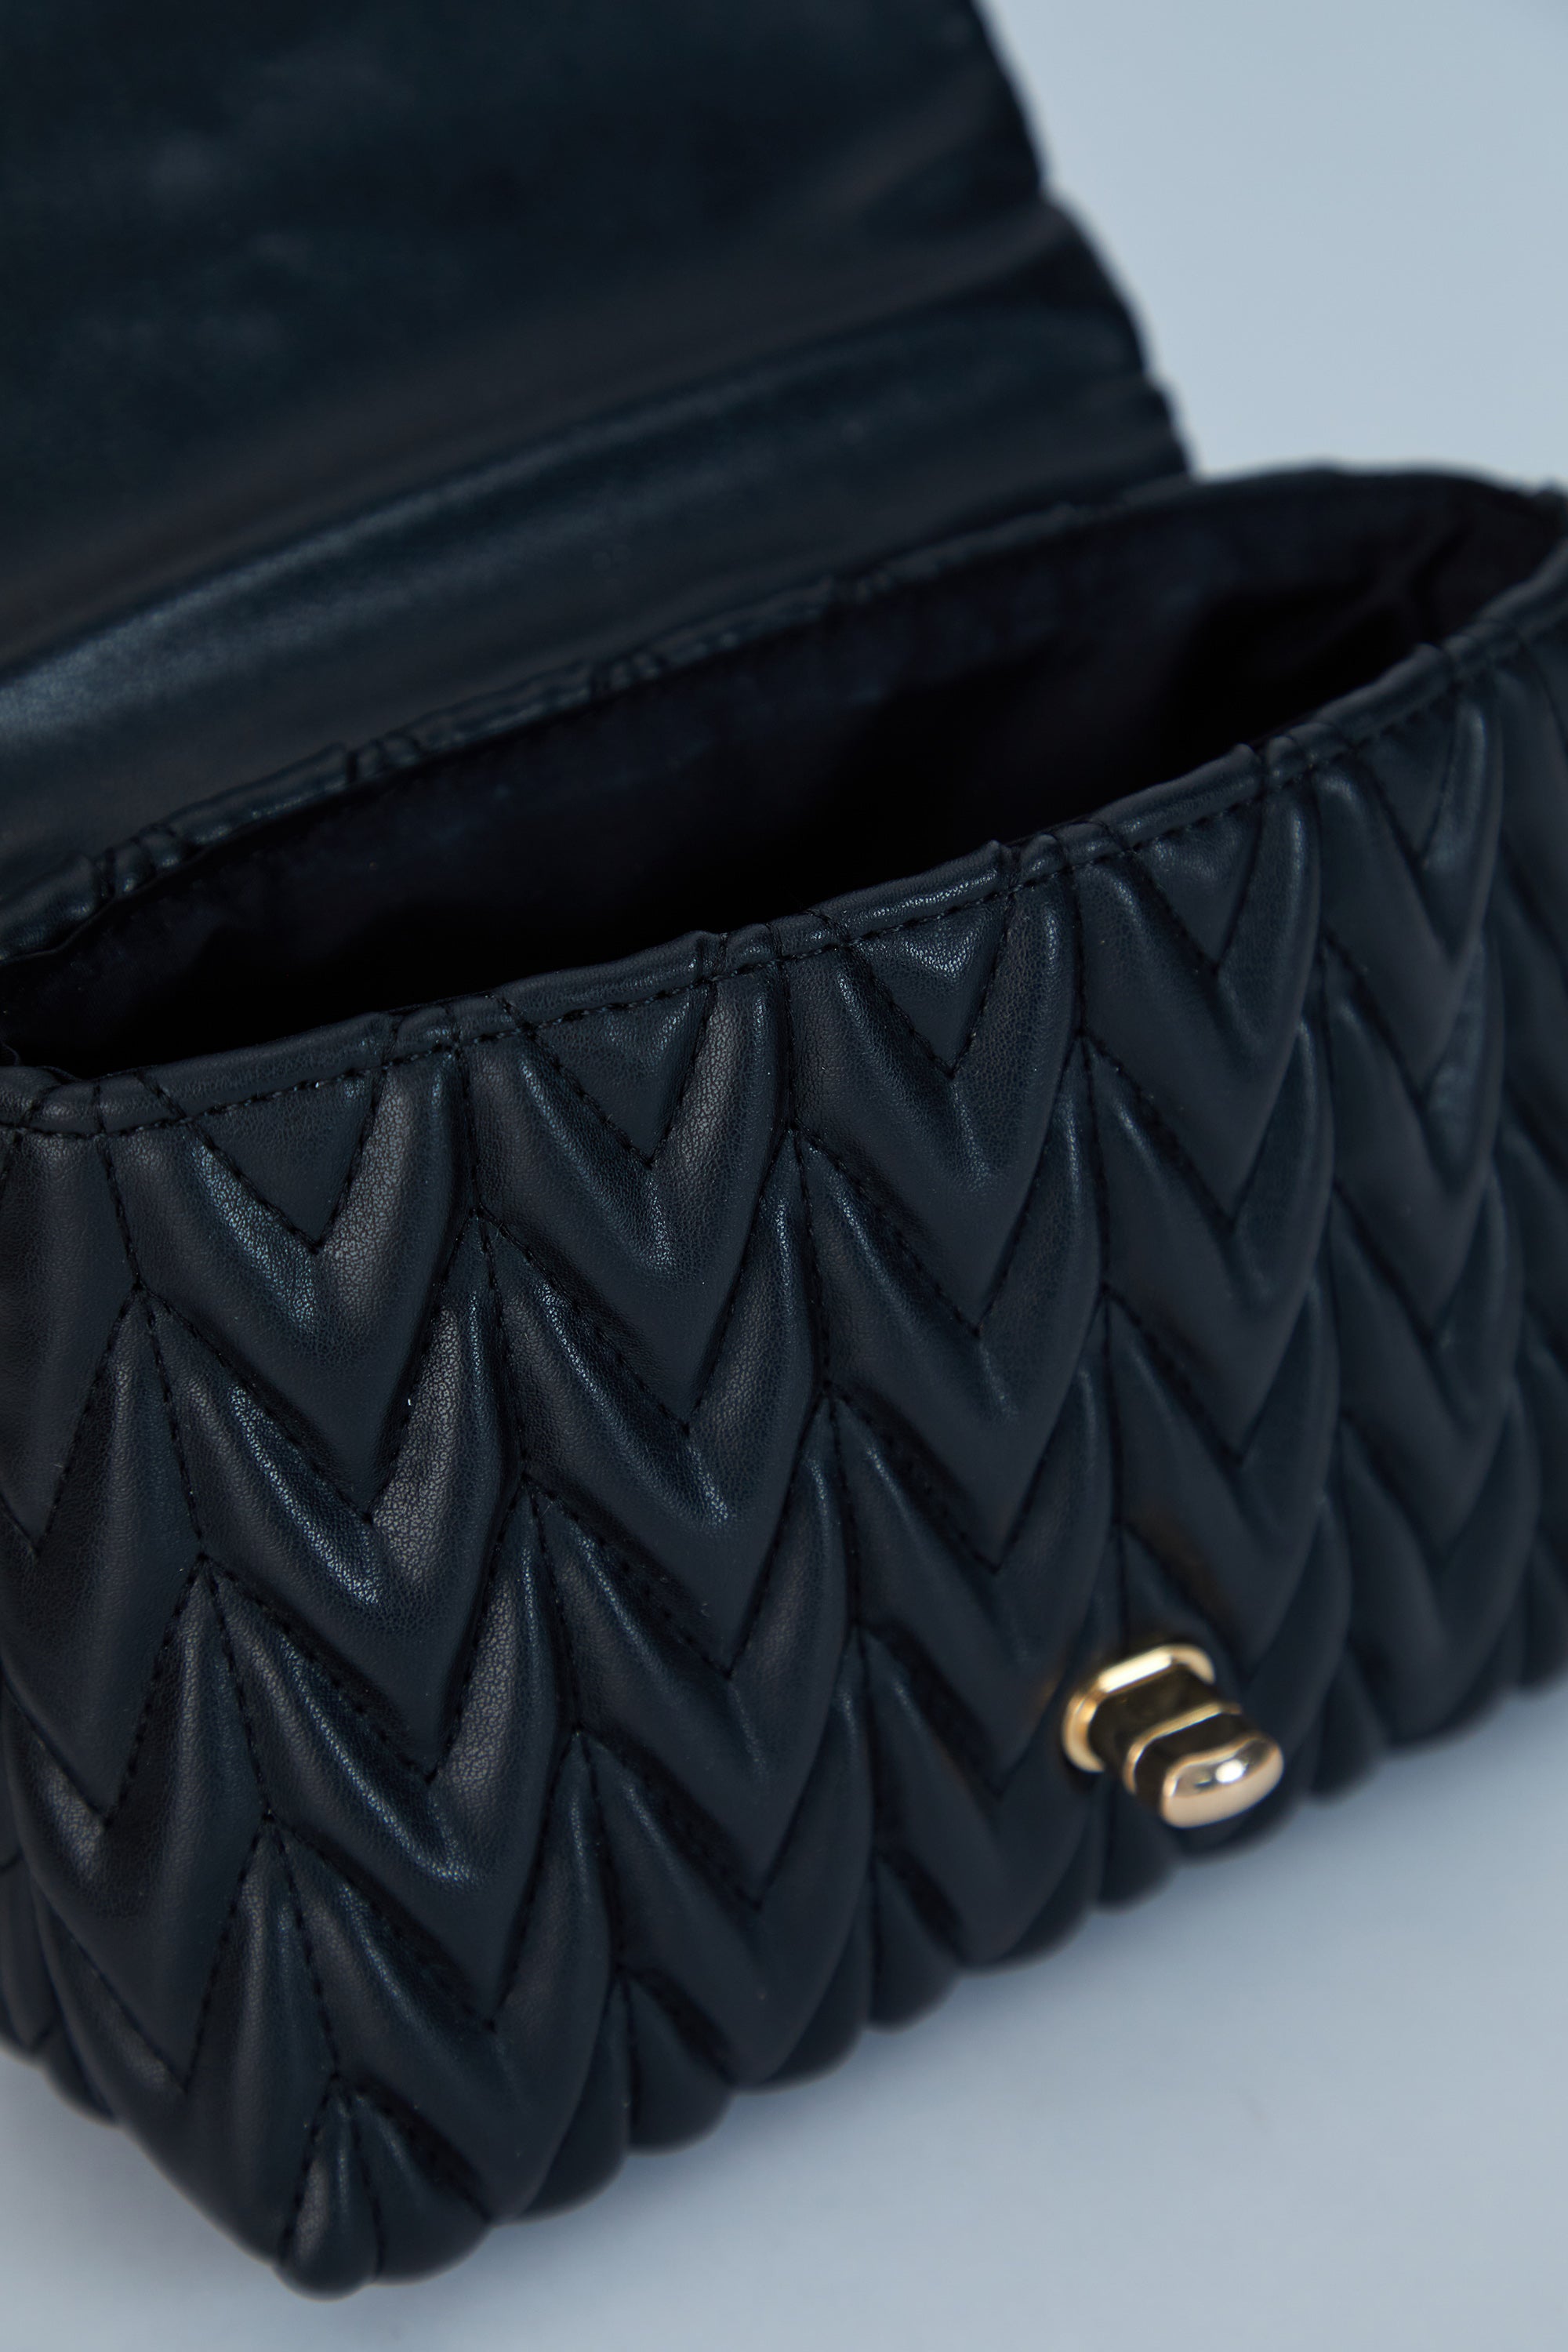 Gewellte Handtasche aus veganem Leder – Schwarz